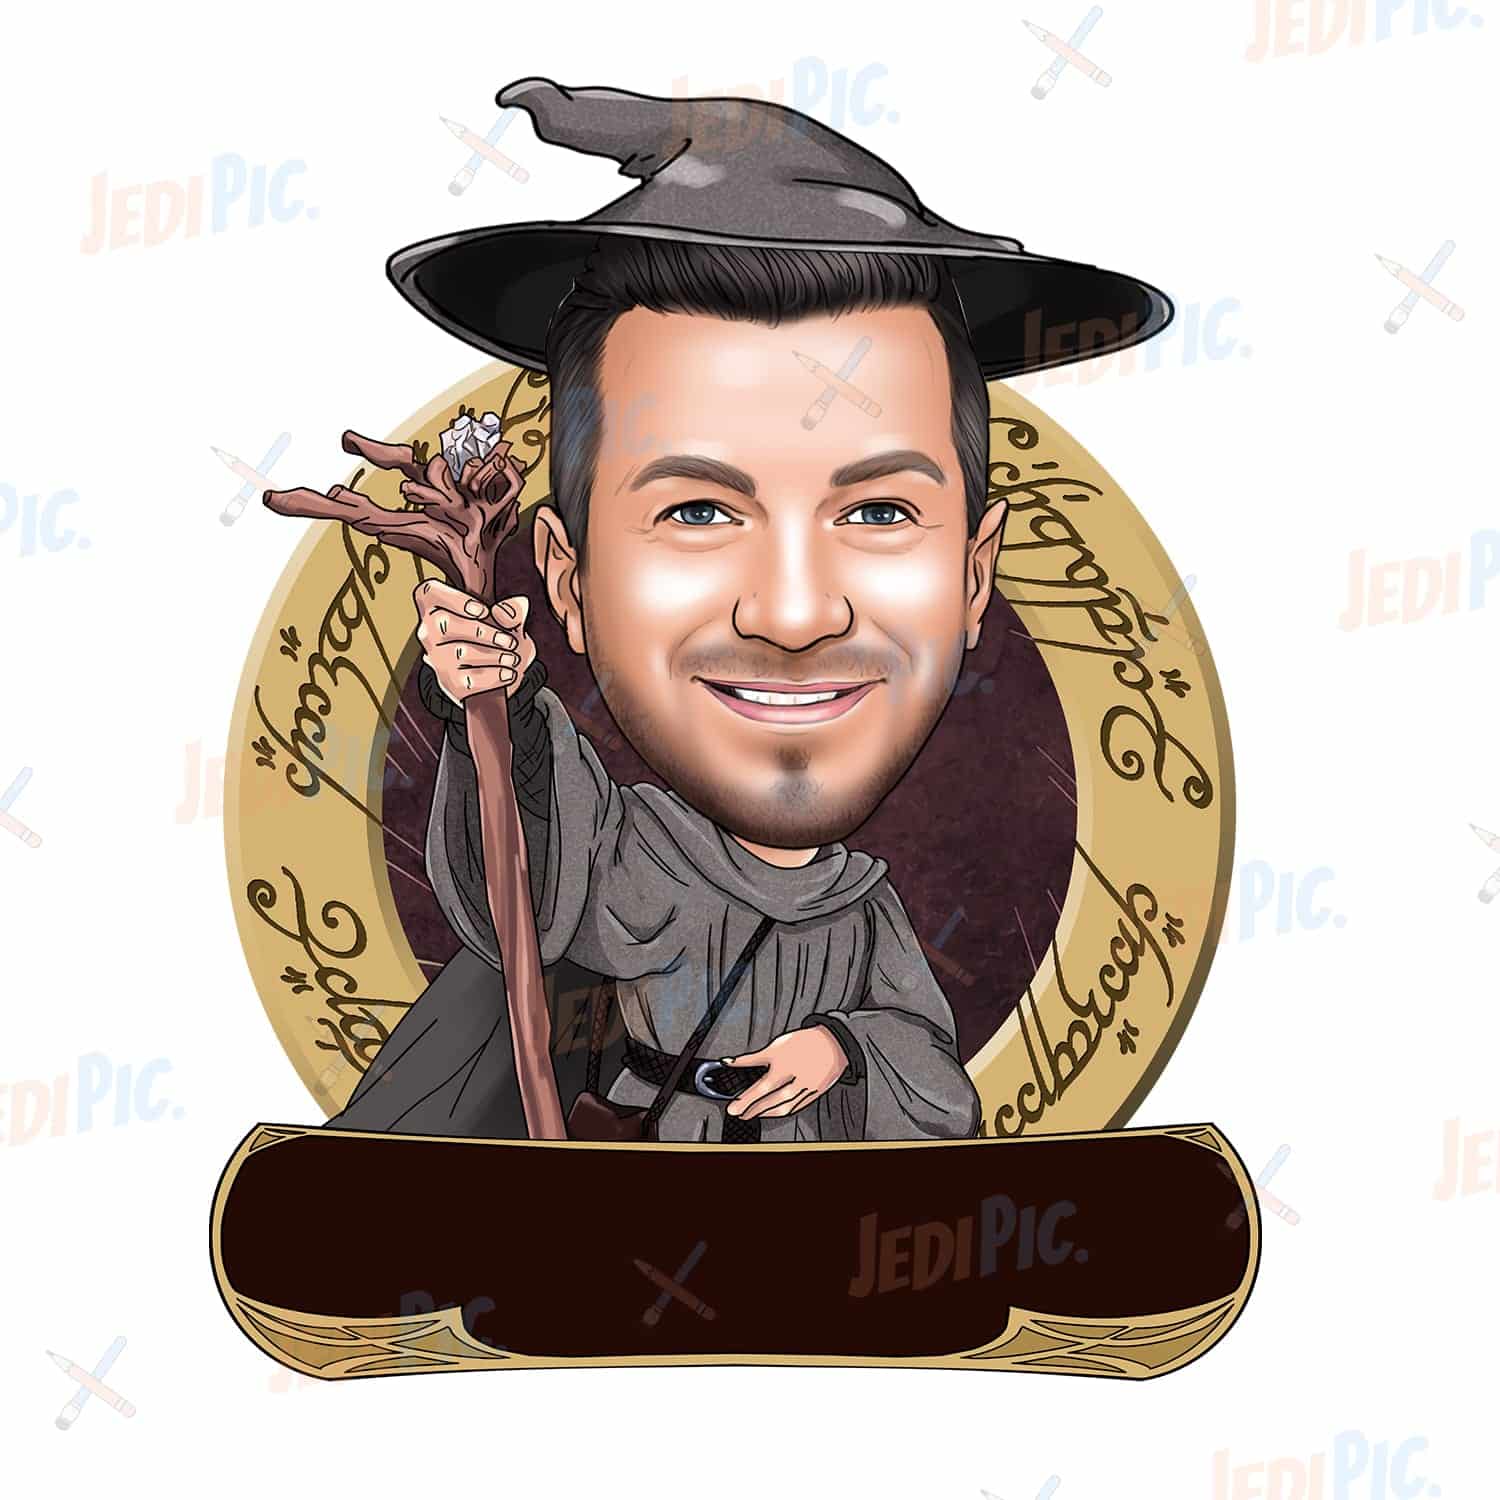 Wizard Cartoon Portrait in Digital Style